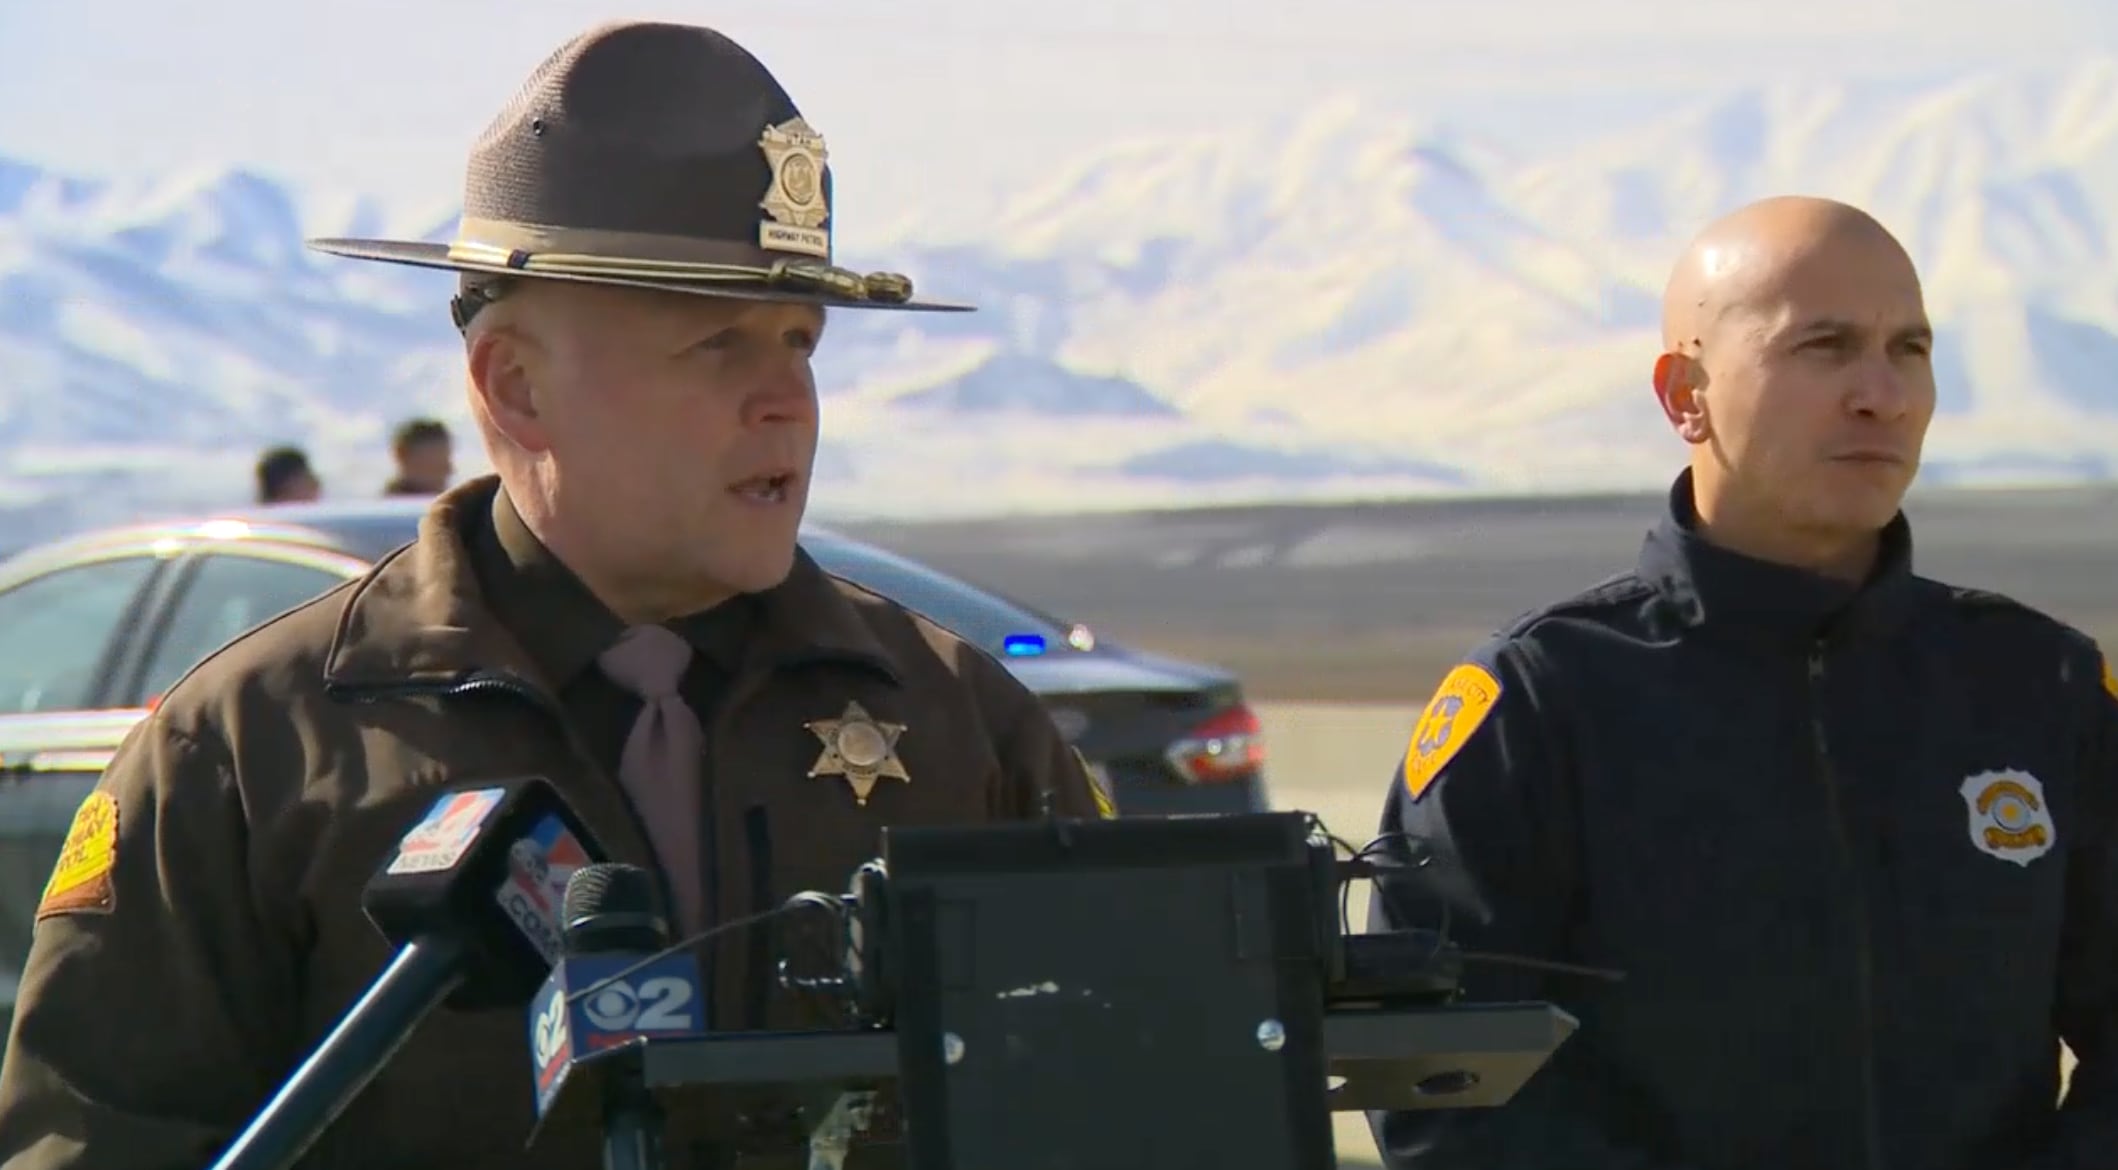 KSL 5 TV - A Utah Highway Patrol trooper's vehicle was hit